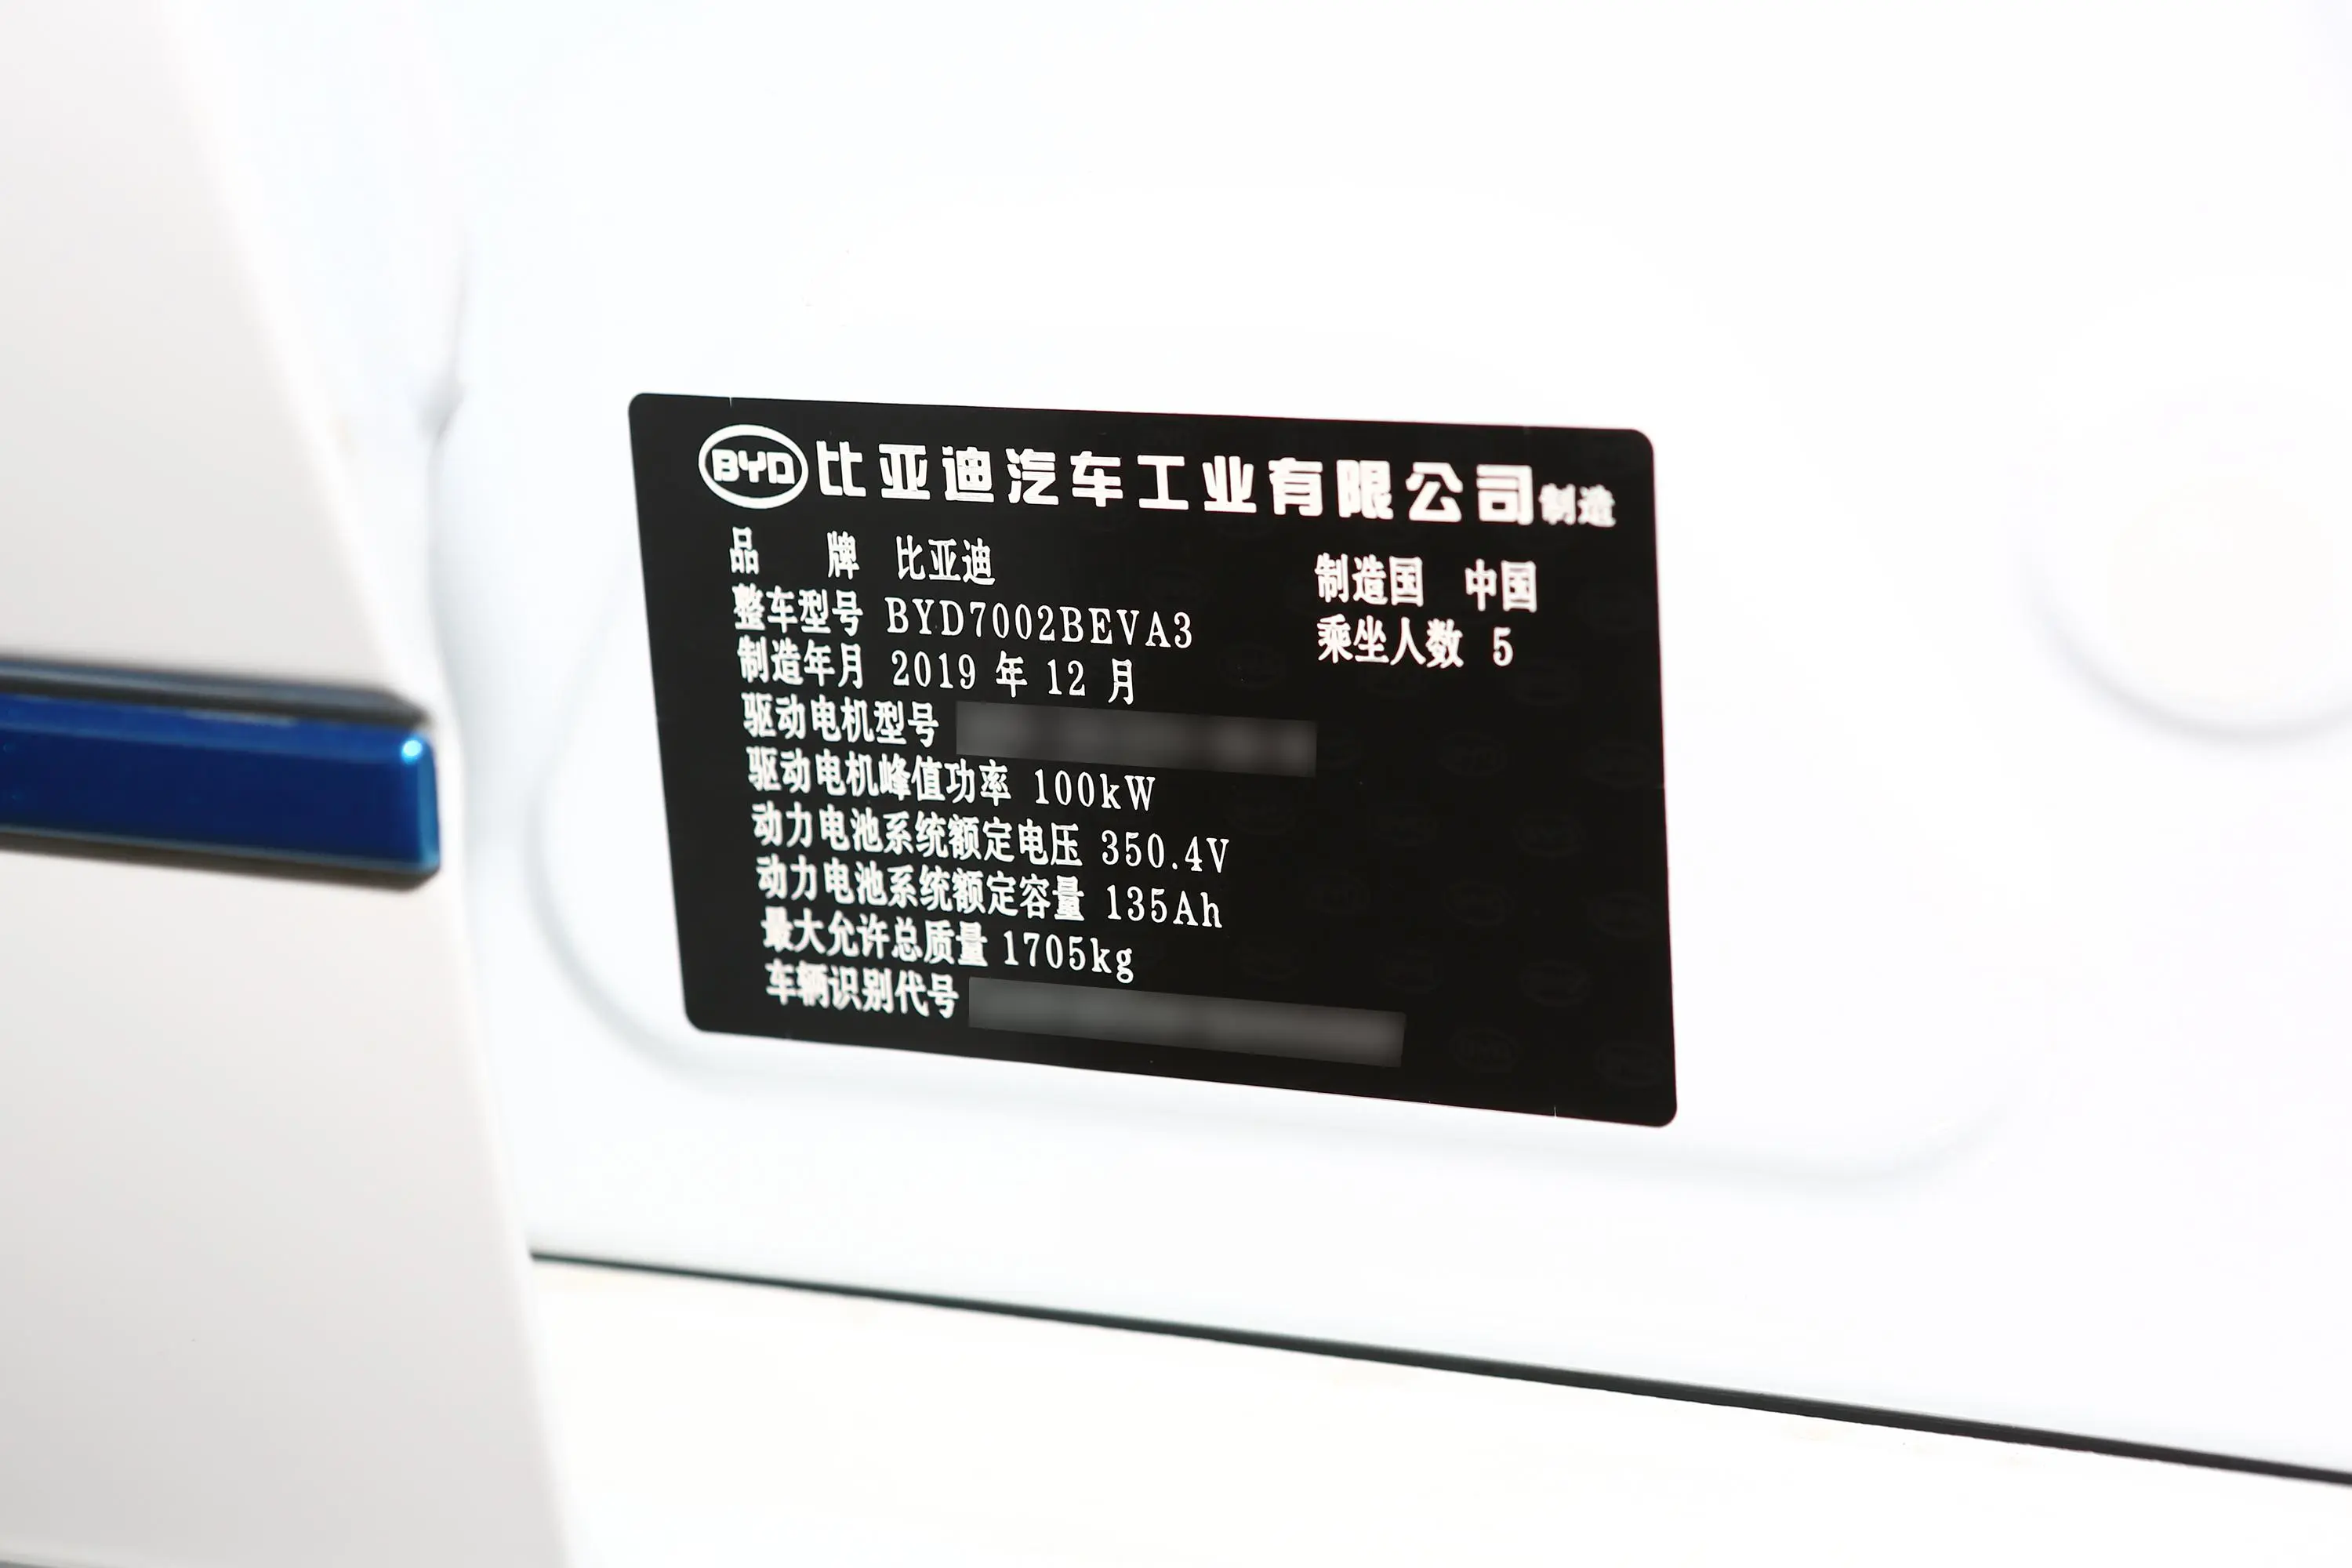 比亚迪e3400 出行版车辆信息铭牌